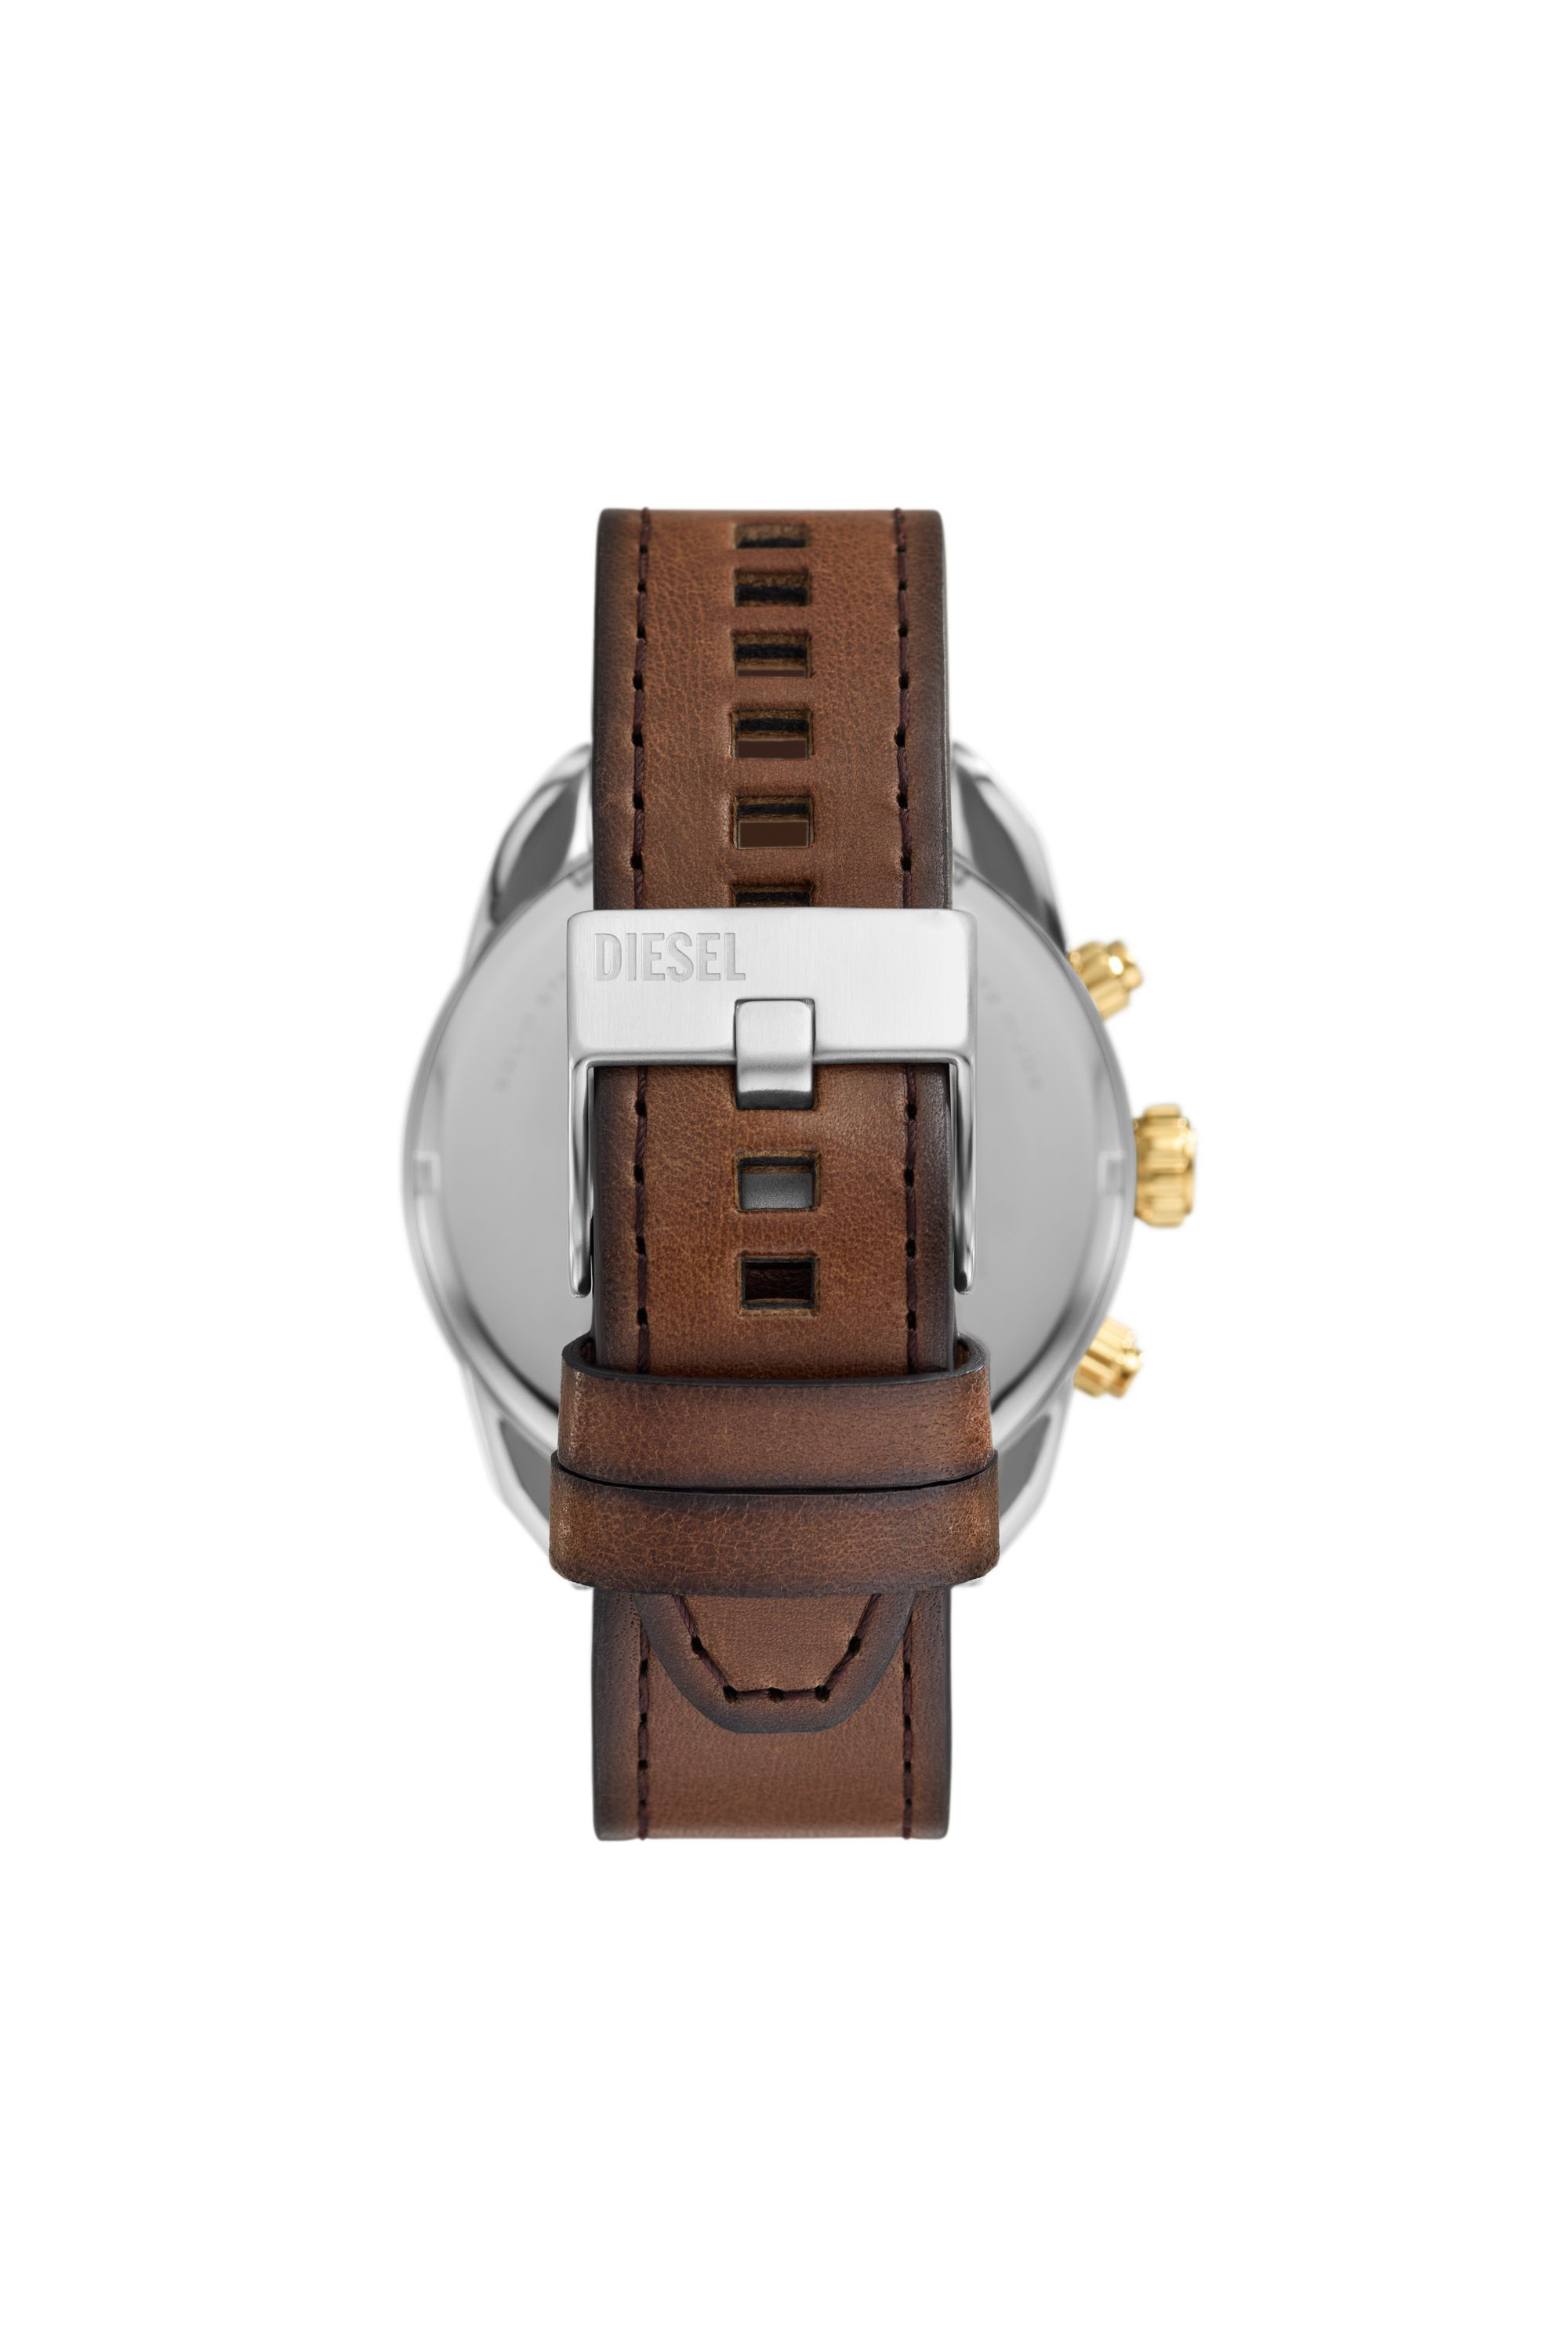 Diesel - DZ4665, Hombre Reloj Spiked de cuero marrón con cronógrafo in Marrón - Image 2